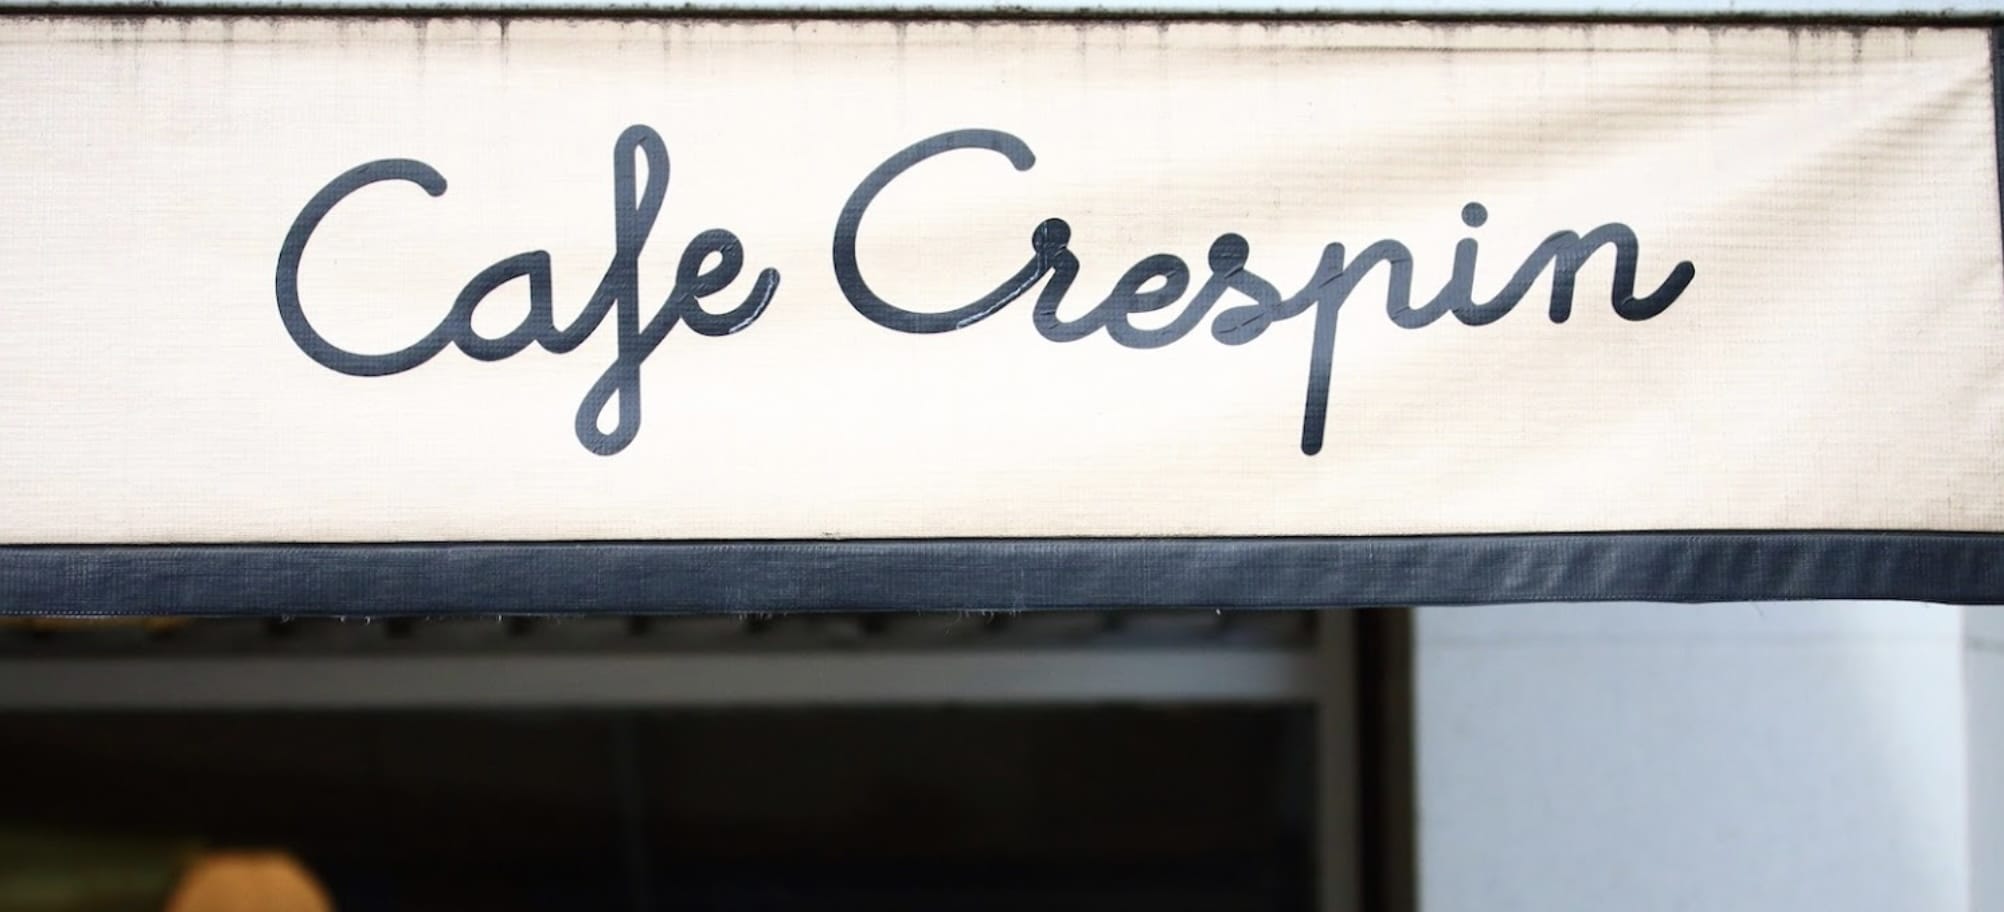 Cafe Crespin Buenos Aires